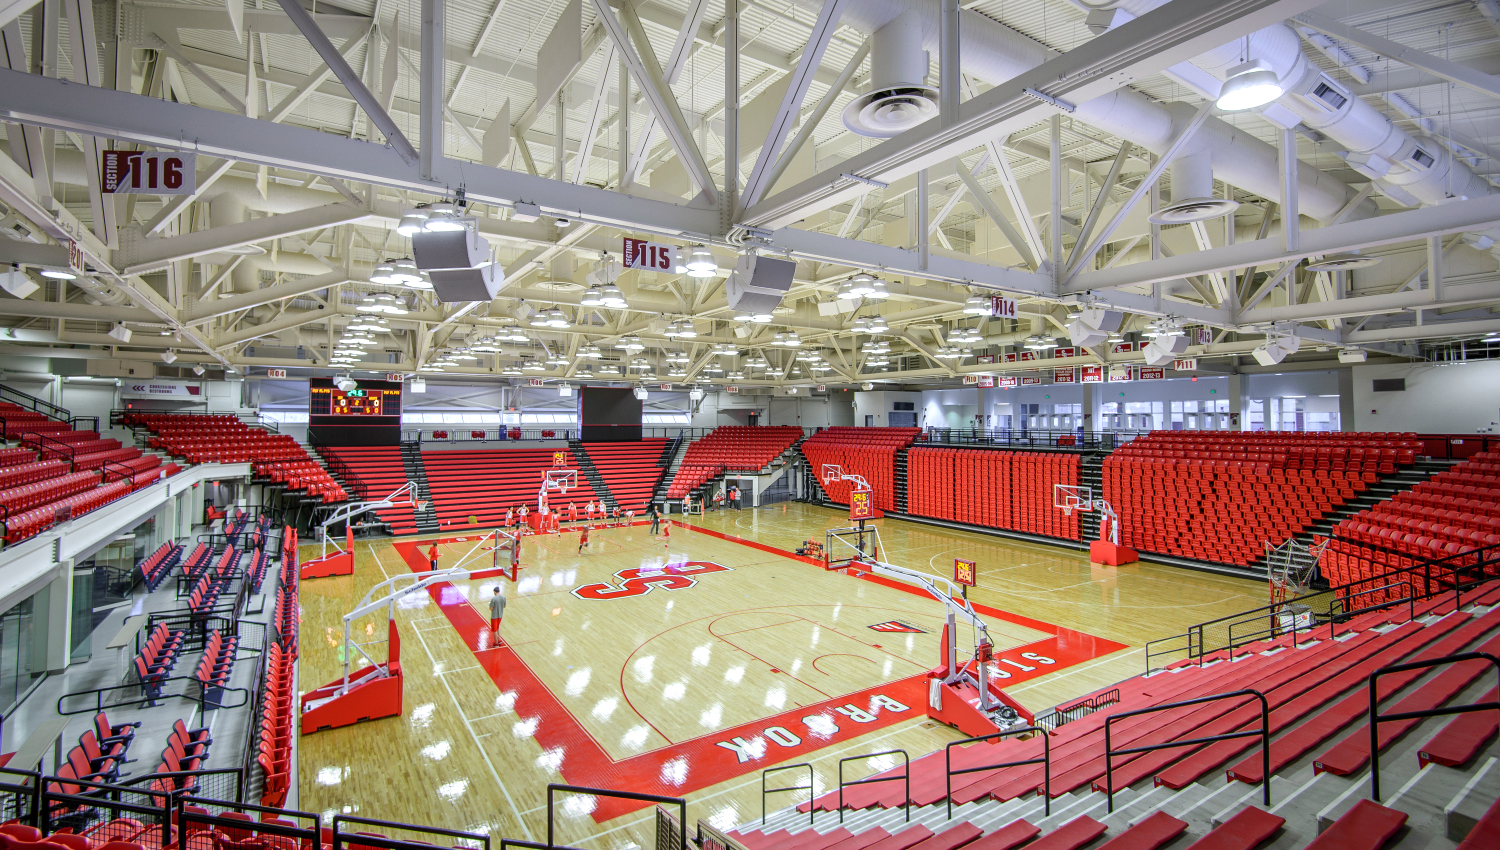 SUNY Stony Brook Arena Renovation